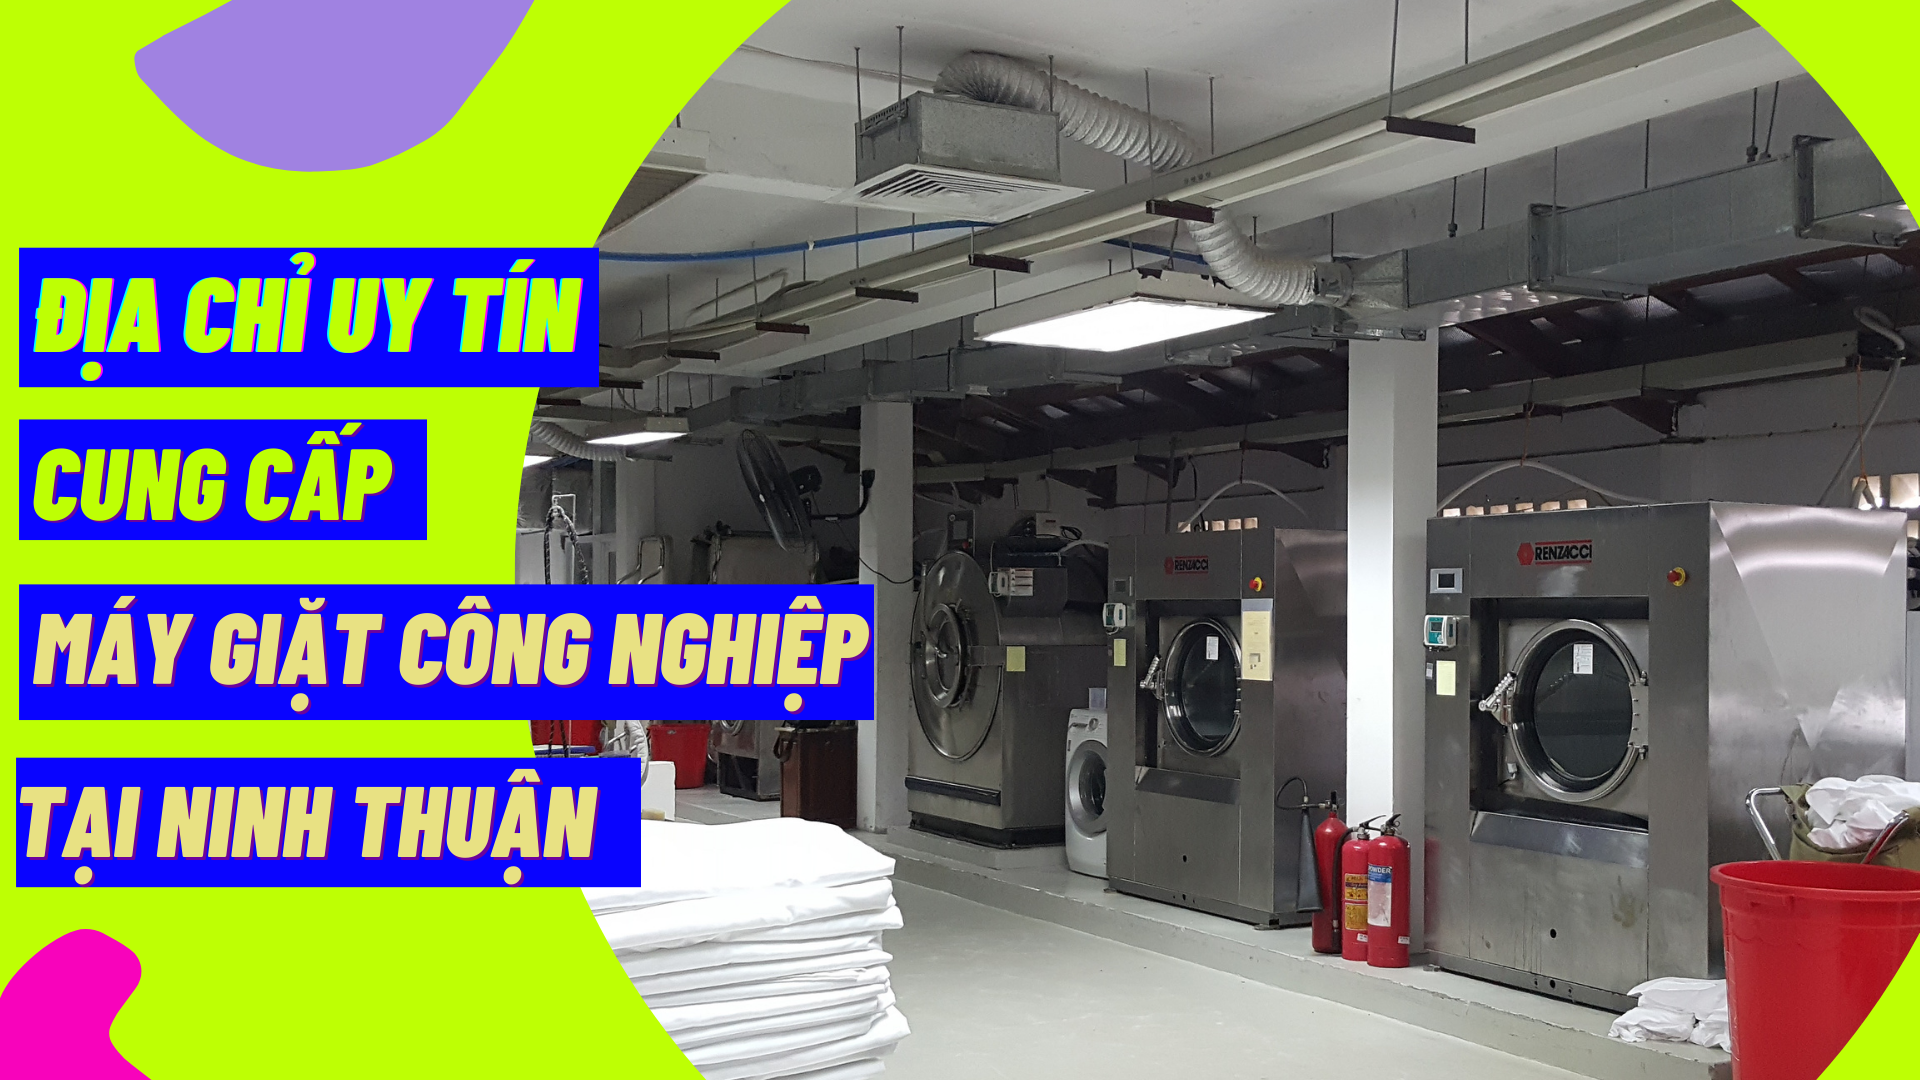 Địa chỉ uy tín cung cấp máy giặt công nghiệp tại Ninh Thuận